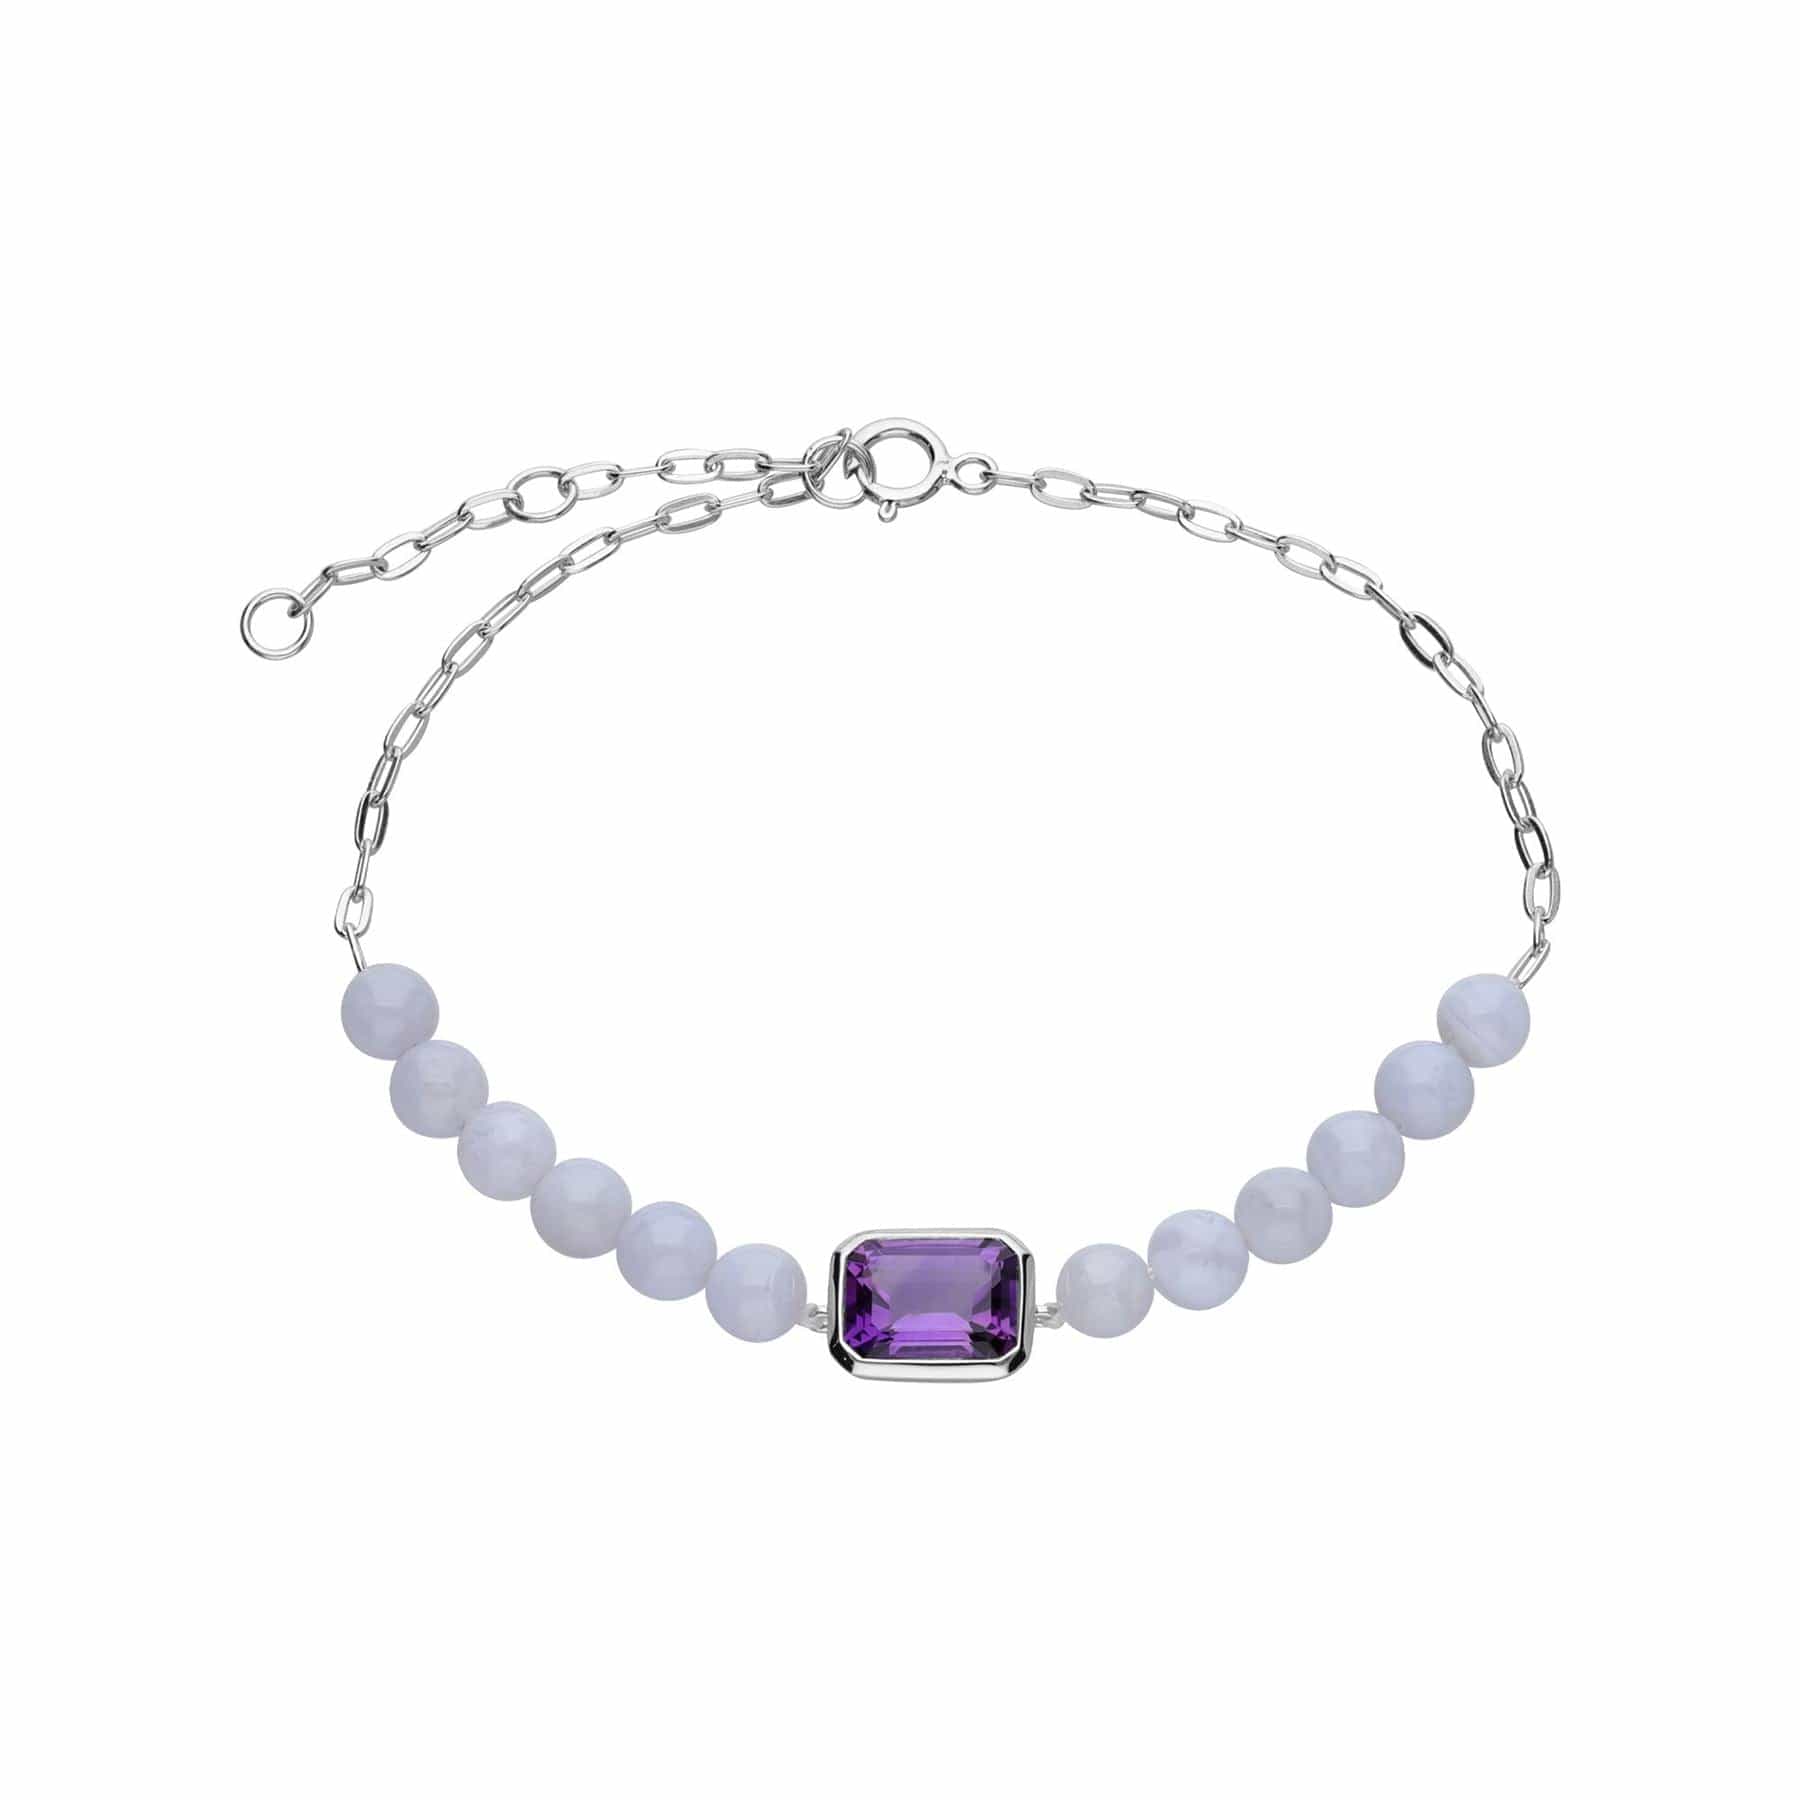 Gemondo ECFEW™ 'The Unifier' Amethyst & Blue Lace Agate Beads Bracelet